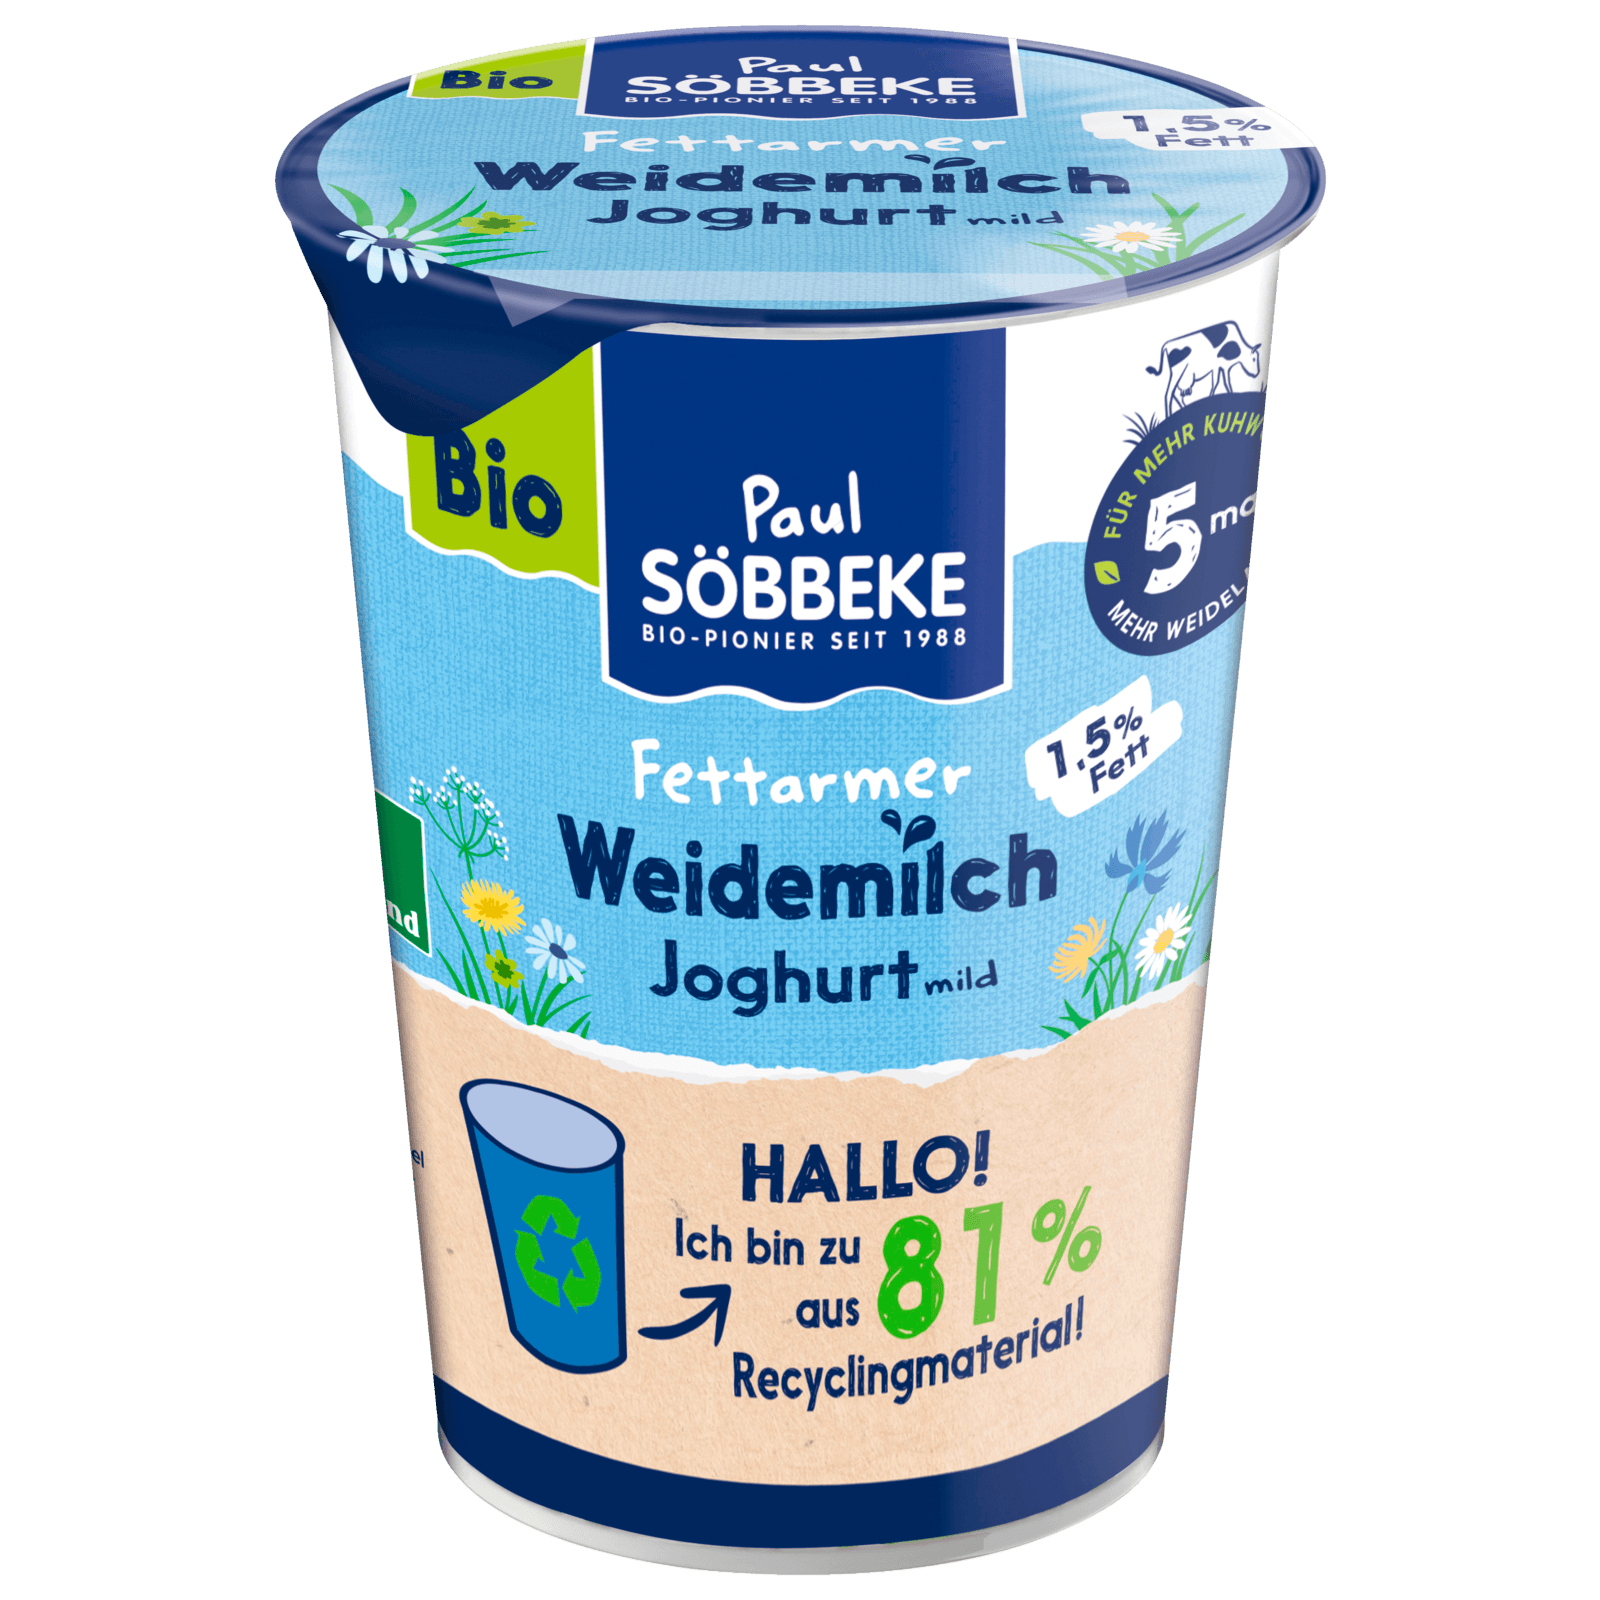 Söbbeke Bioland Joghurt REWE online bestellen! 1,5% Mild bei 500g